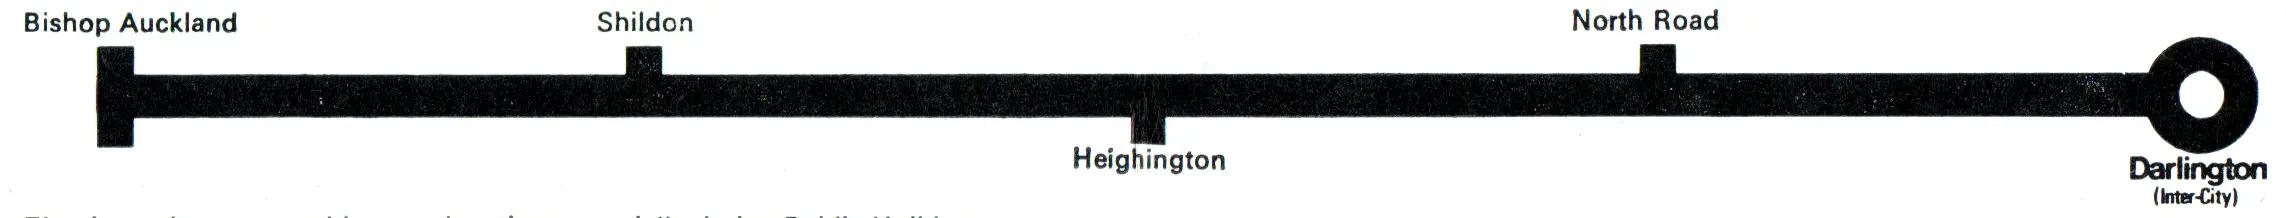 Bishop Auckland - Darlington route diagram